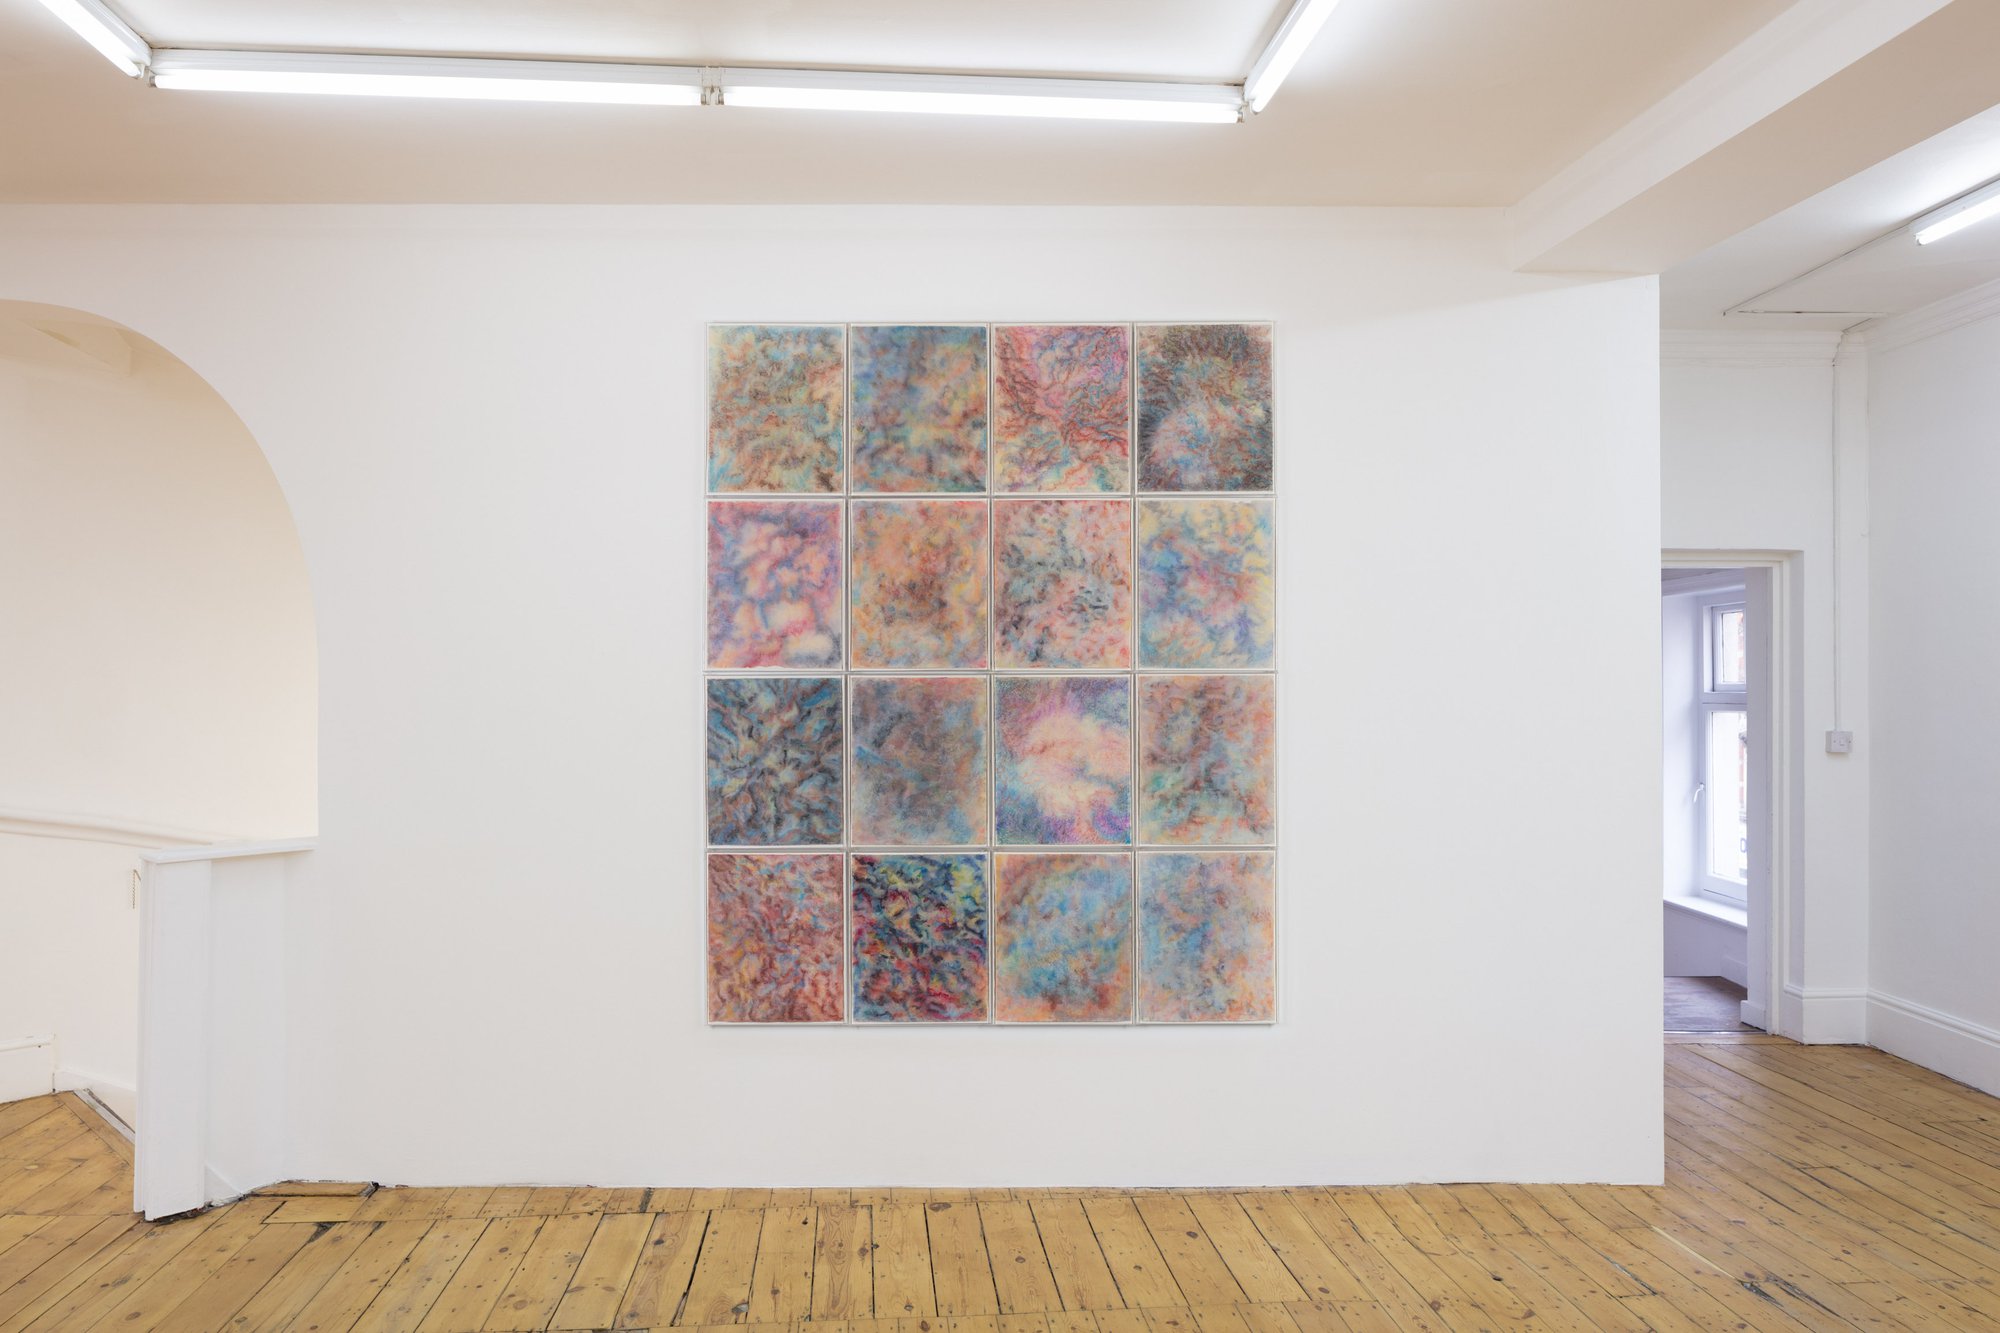 Liliane Lijn, Windows, 16 soft pastel works on paper, framed in perspex, 53 x 42.5 cm each (20 7/8 x 16 3/4 in each), 1979